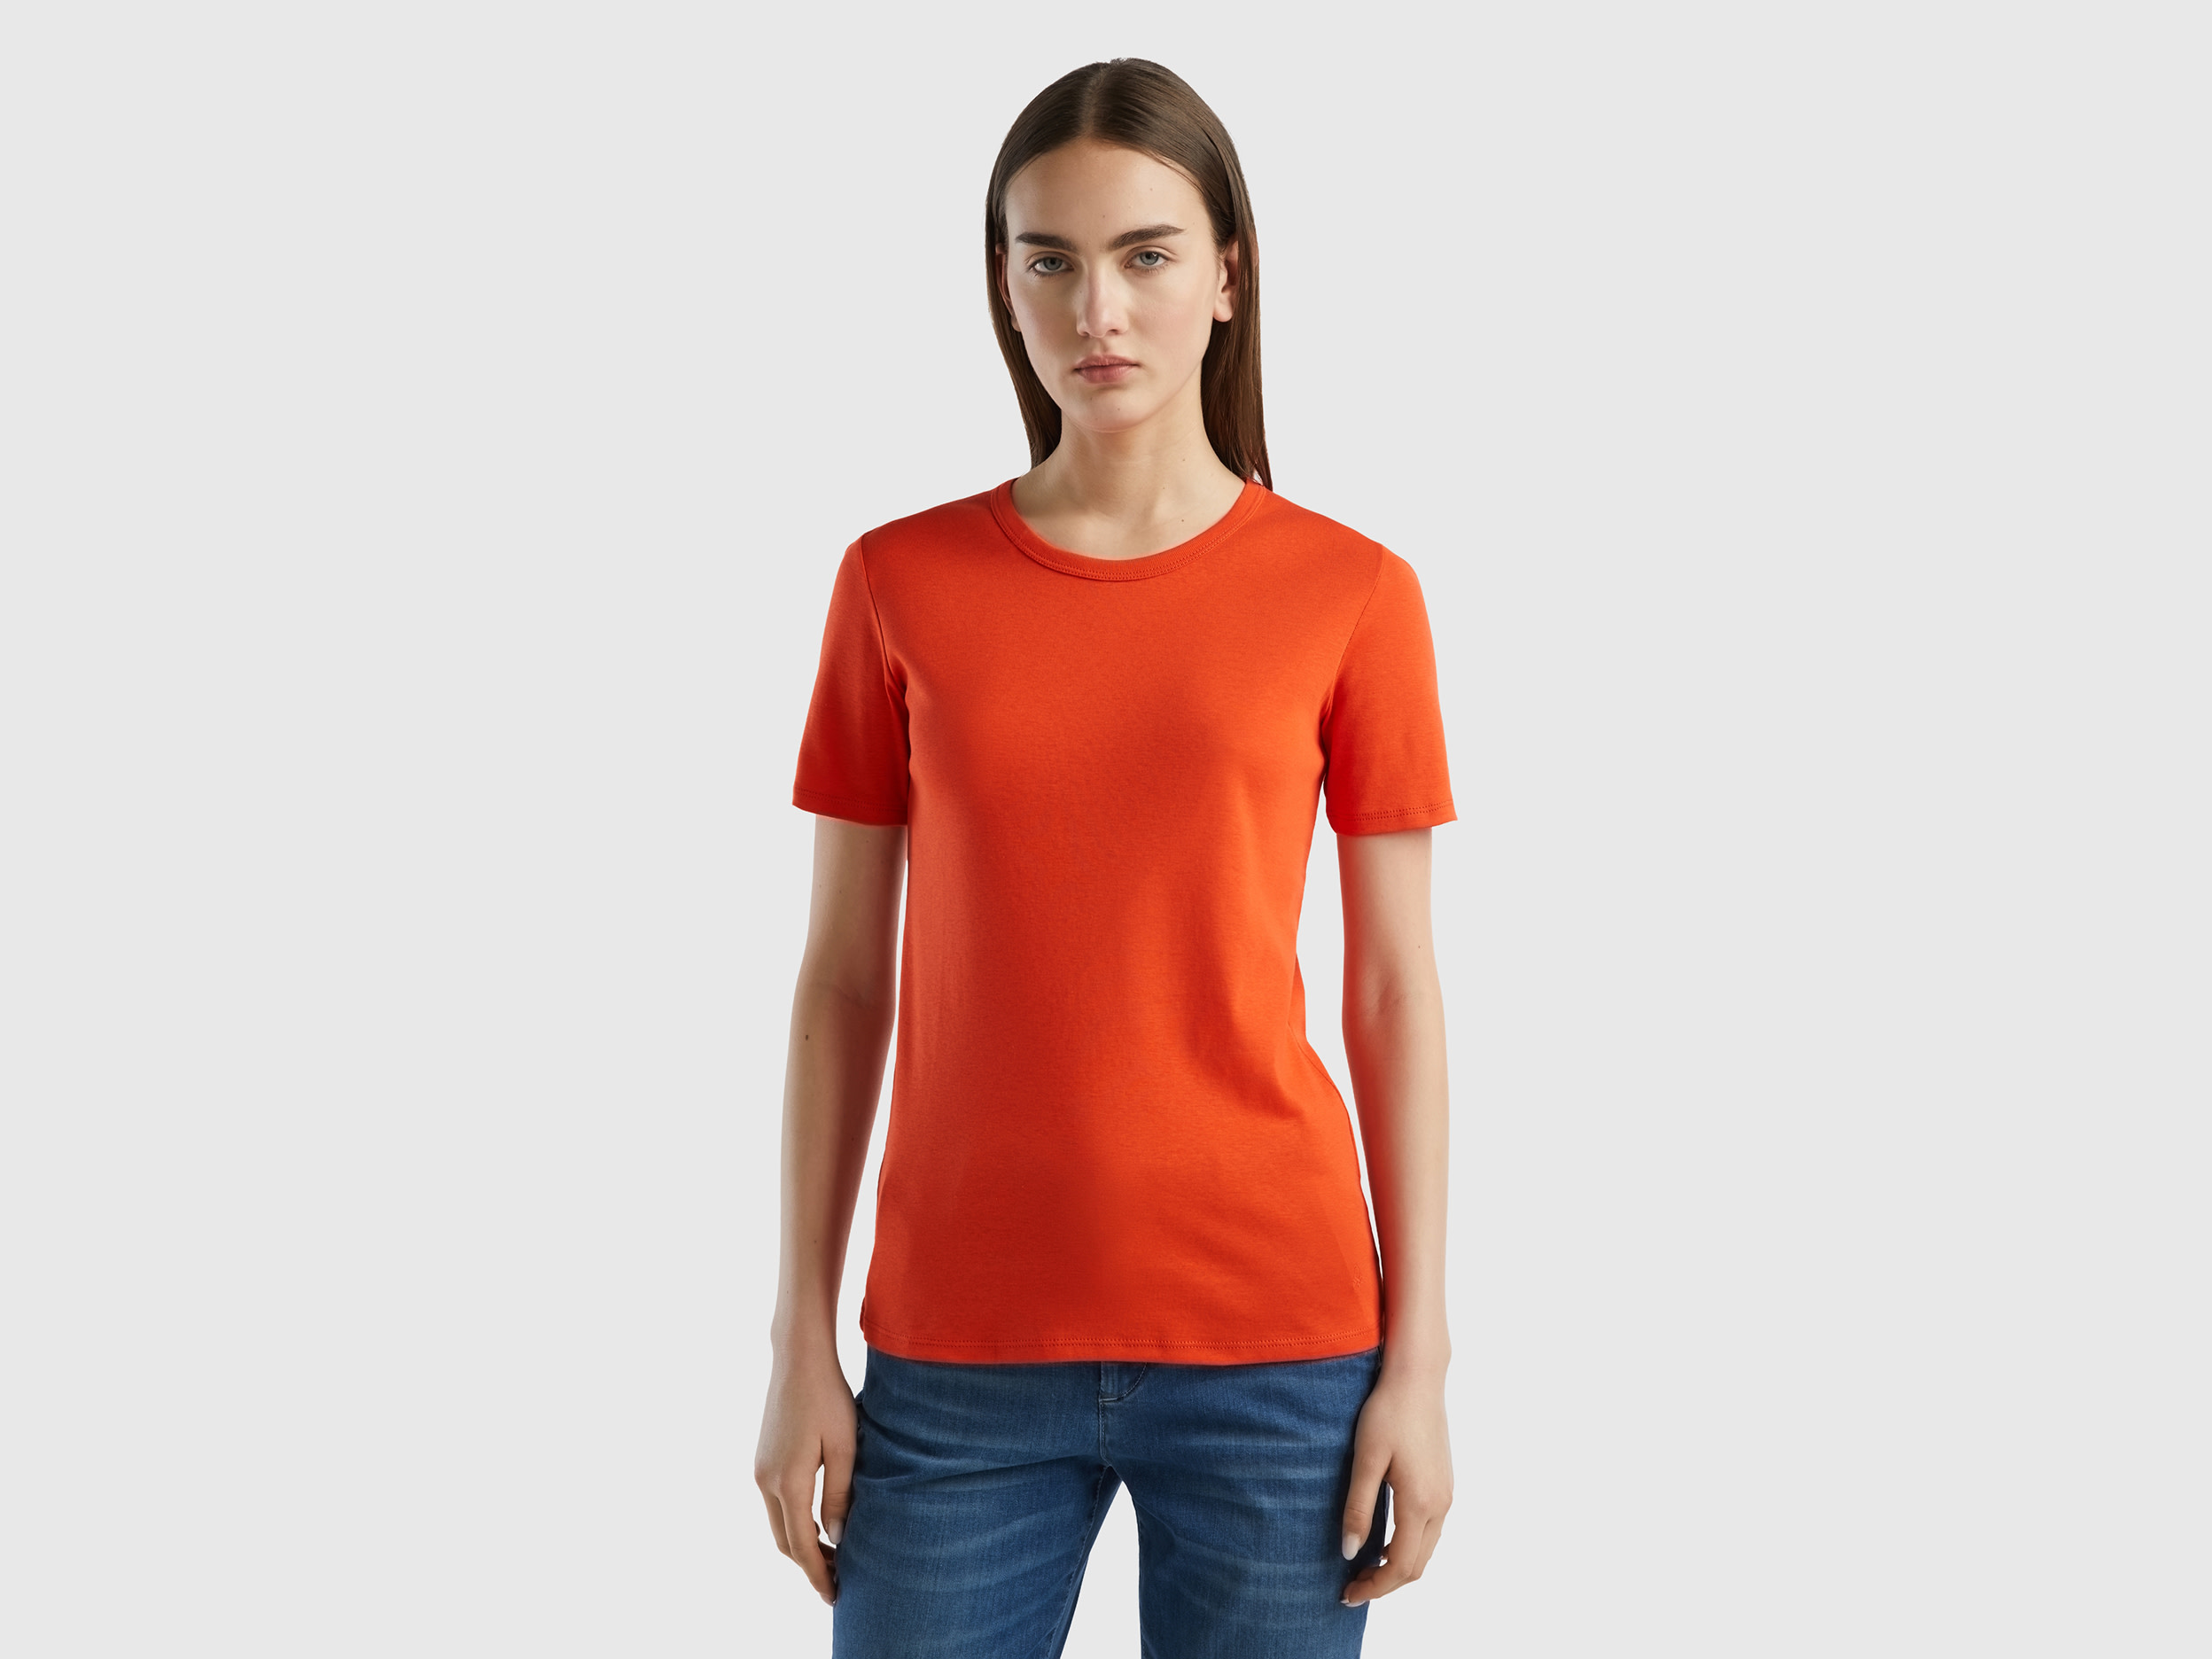 Benetton, Long Fiber Cotton T-shirt, size XL, Red, Women